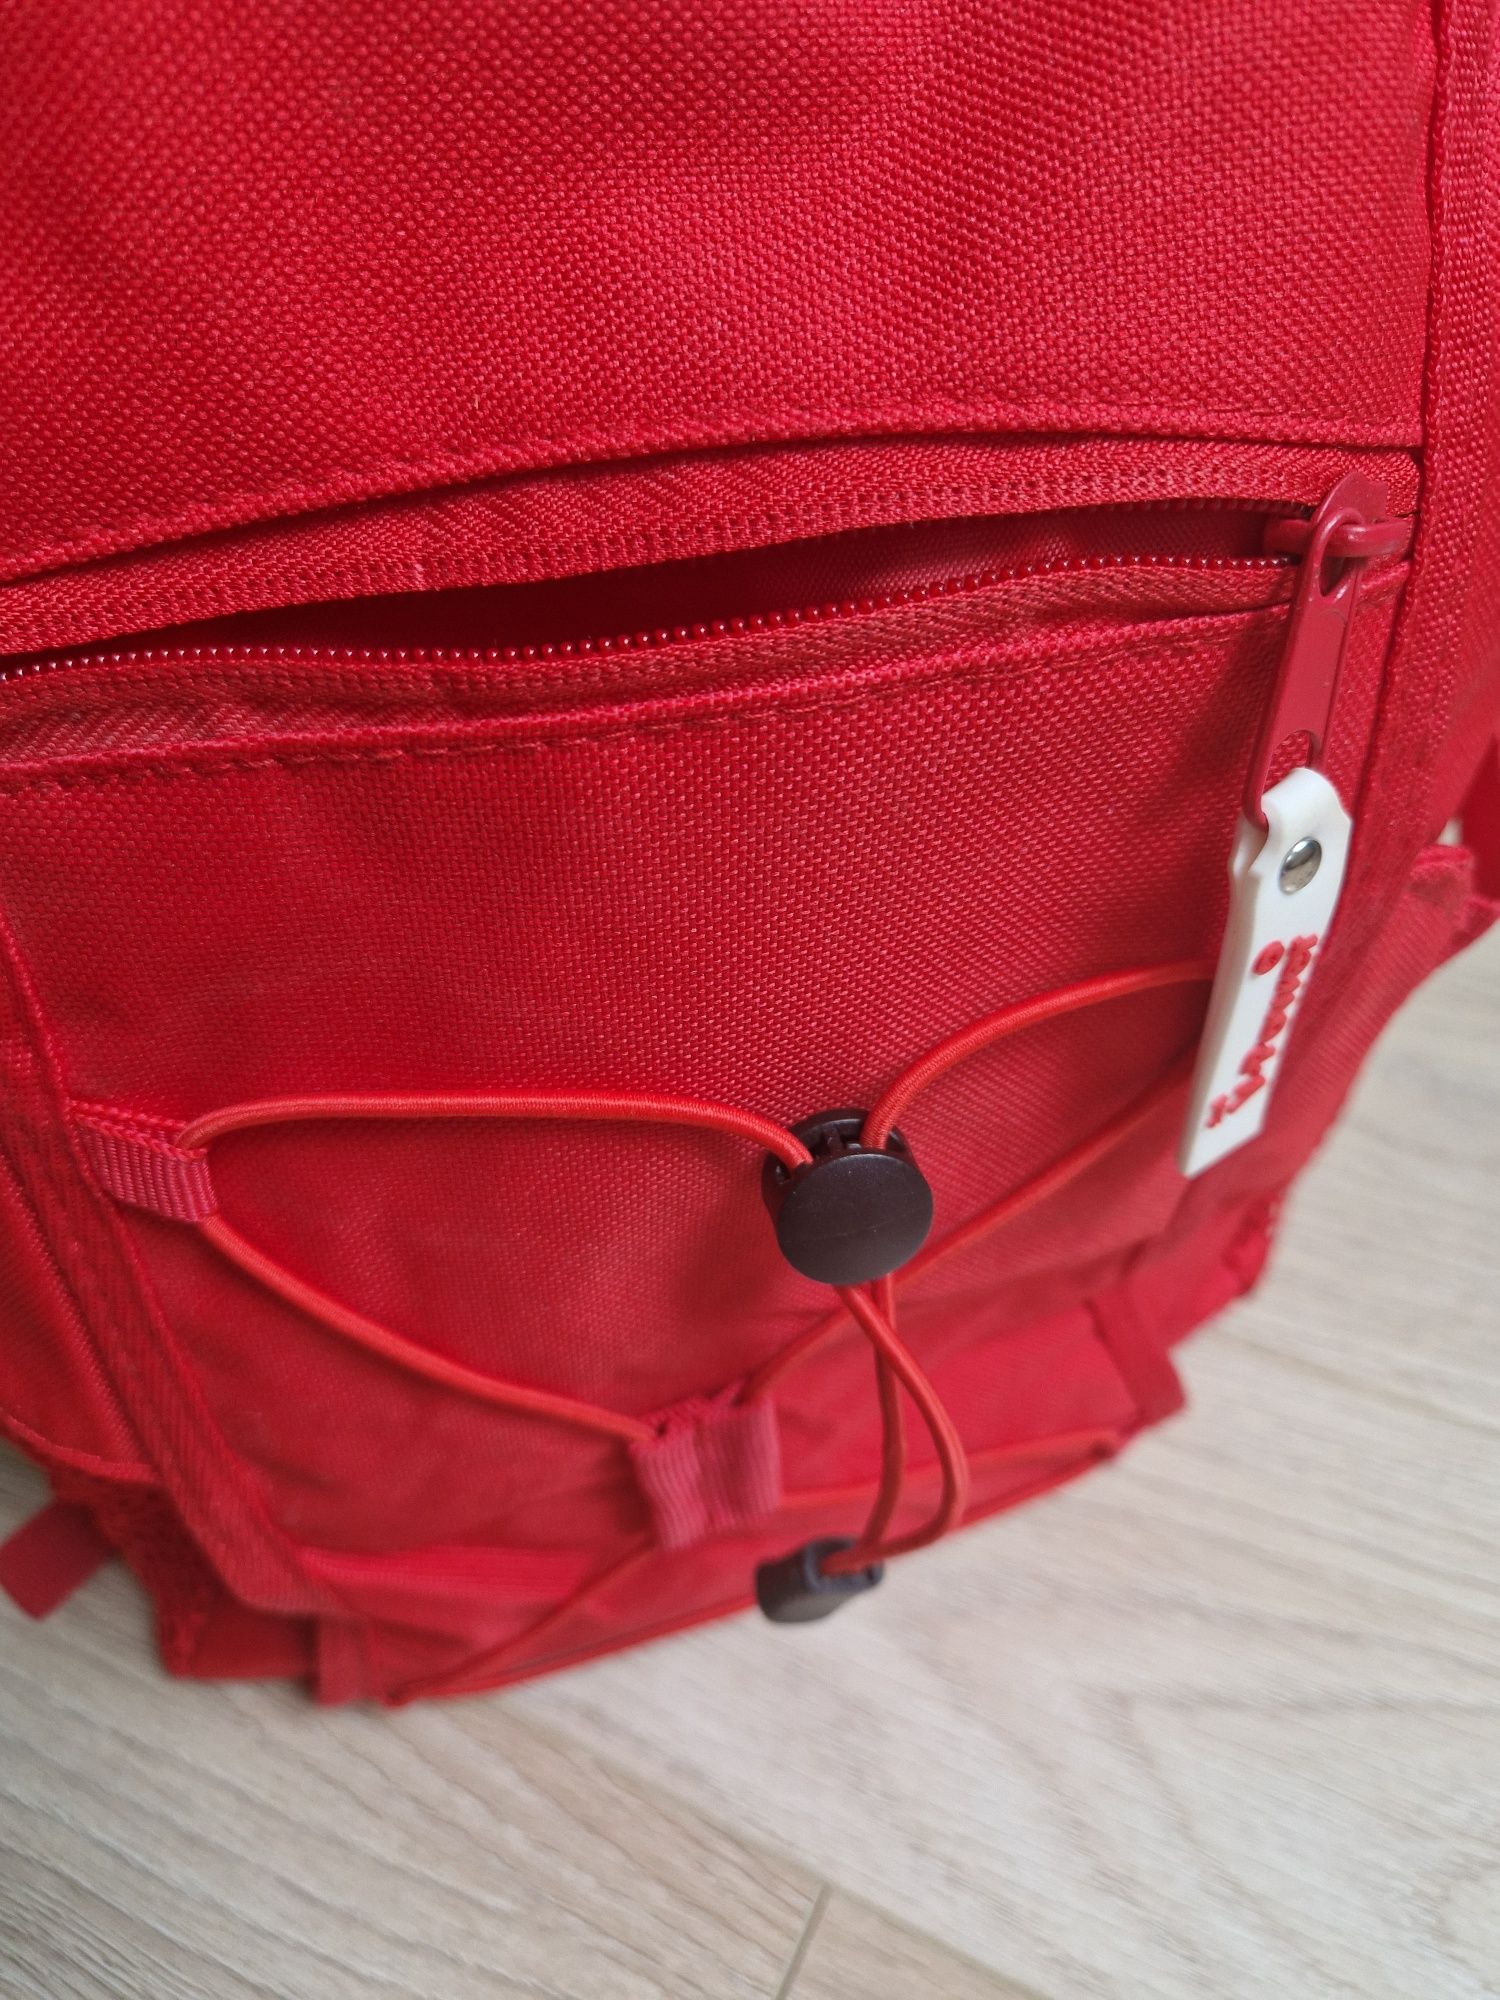 Plecak czerwony średniej wielkości na wycieczkę/mały bagaż podręczny